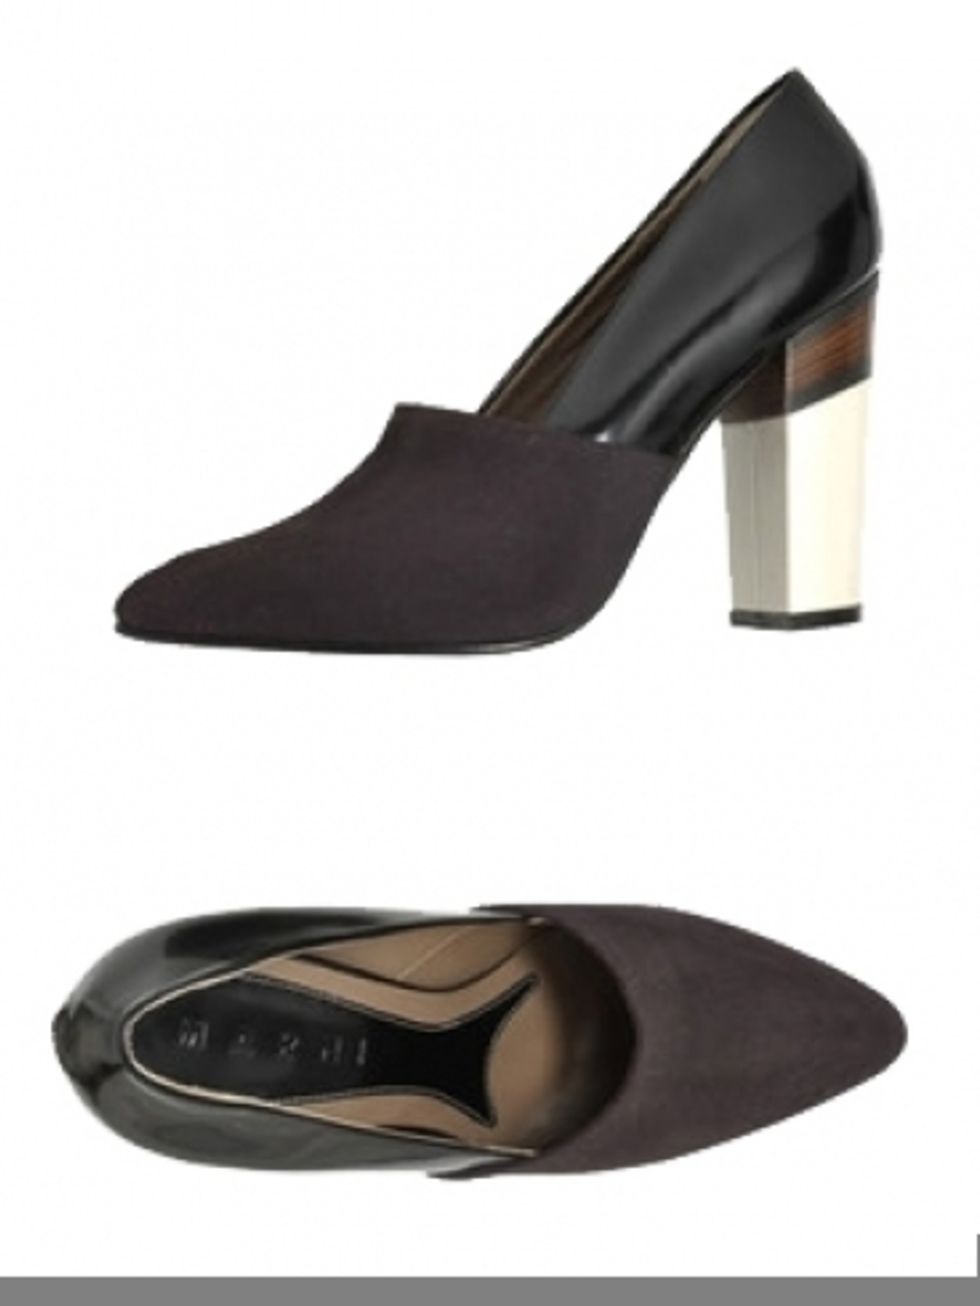 Footwear, Brown, High heels, Black, Basic pump, Beige, Tan, Sandal, Material property, Design, 